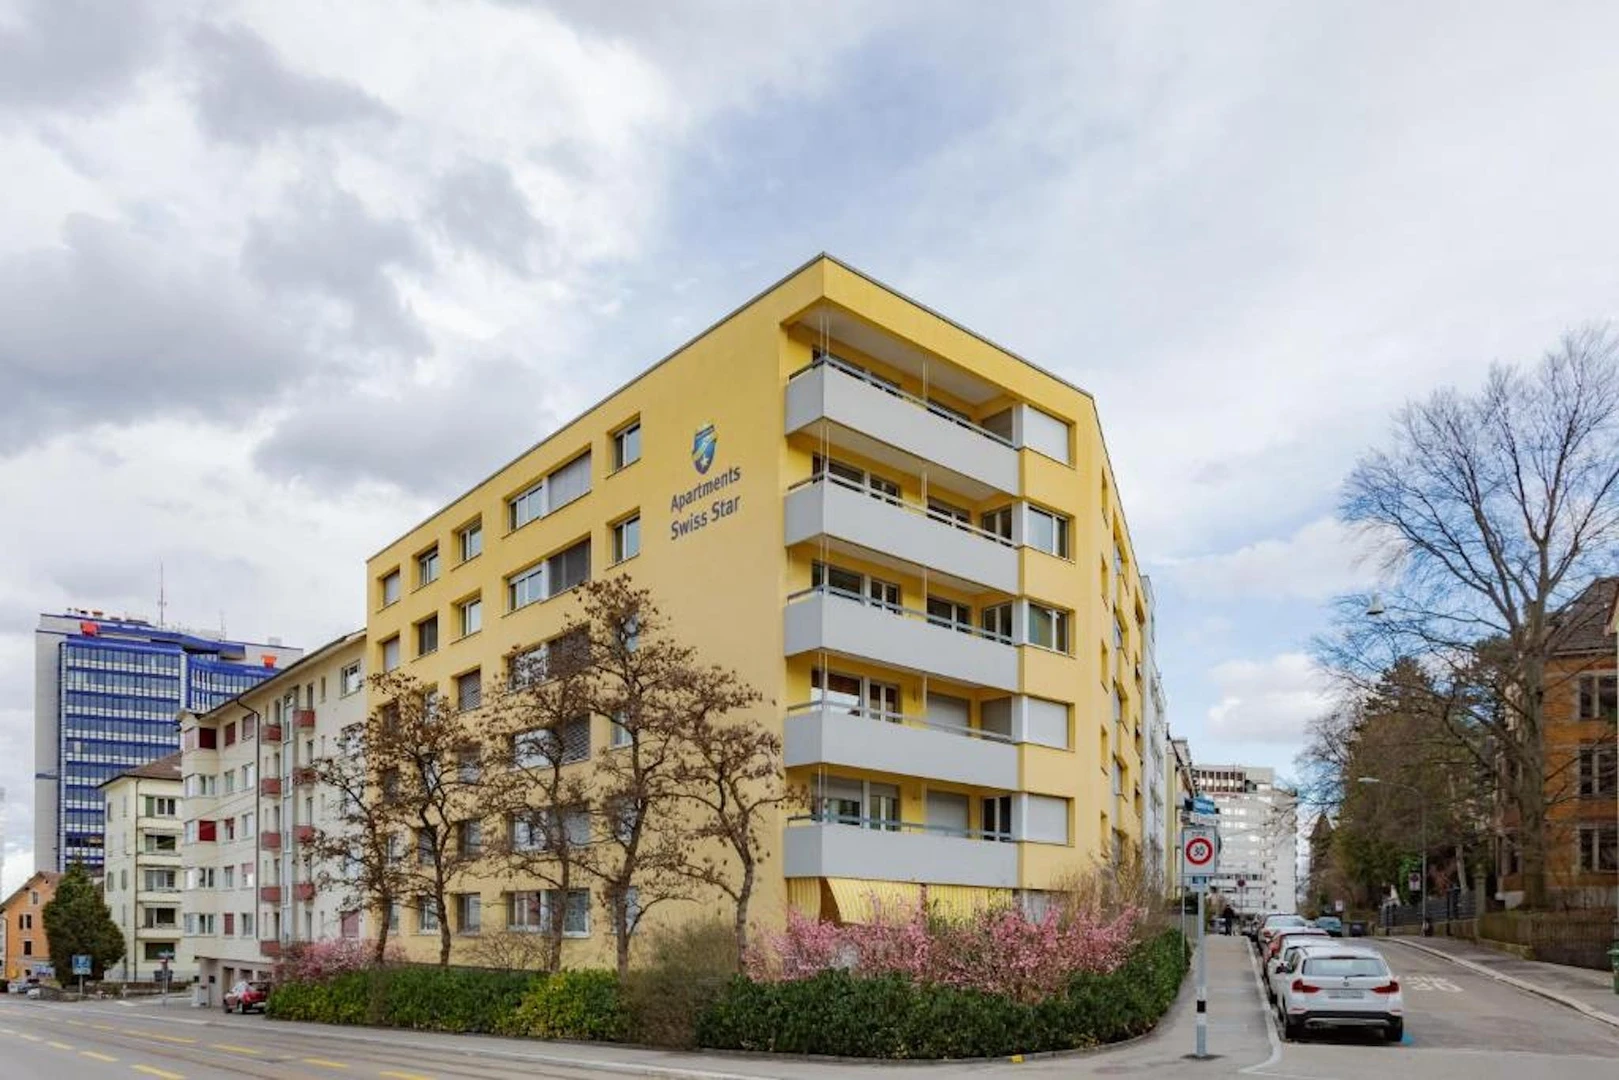 Modern and bright flat in Zurich